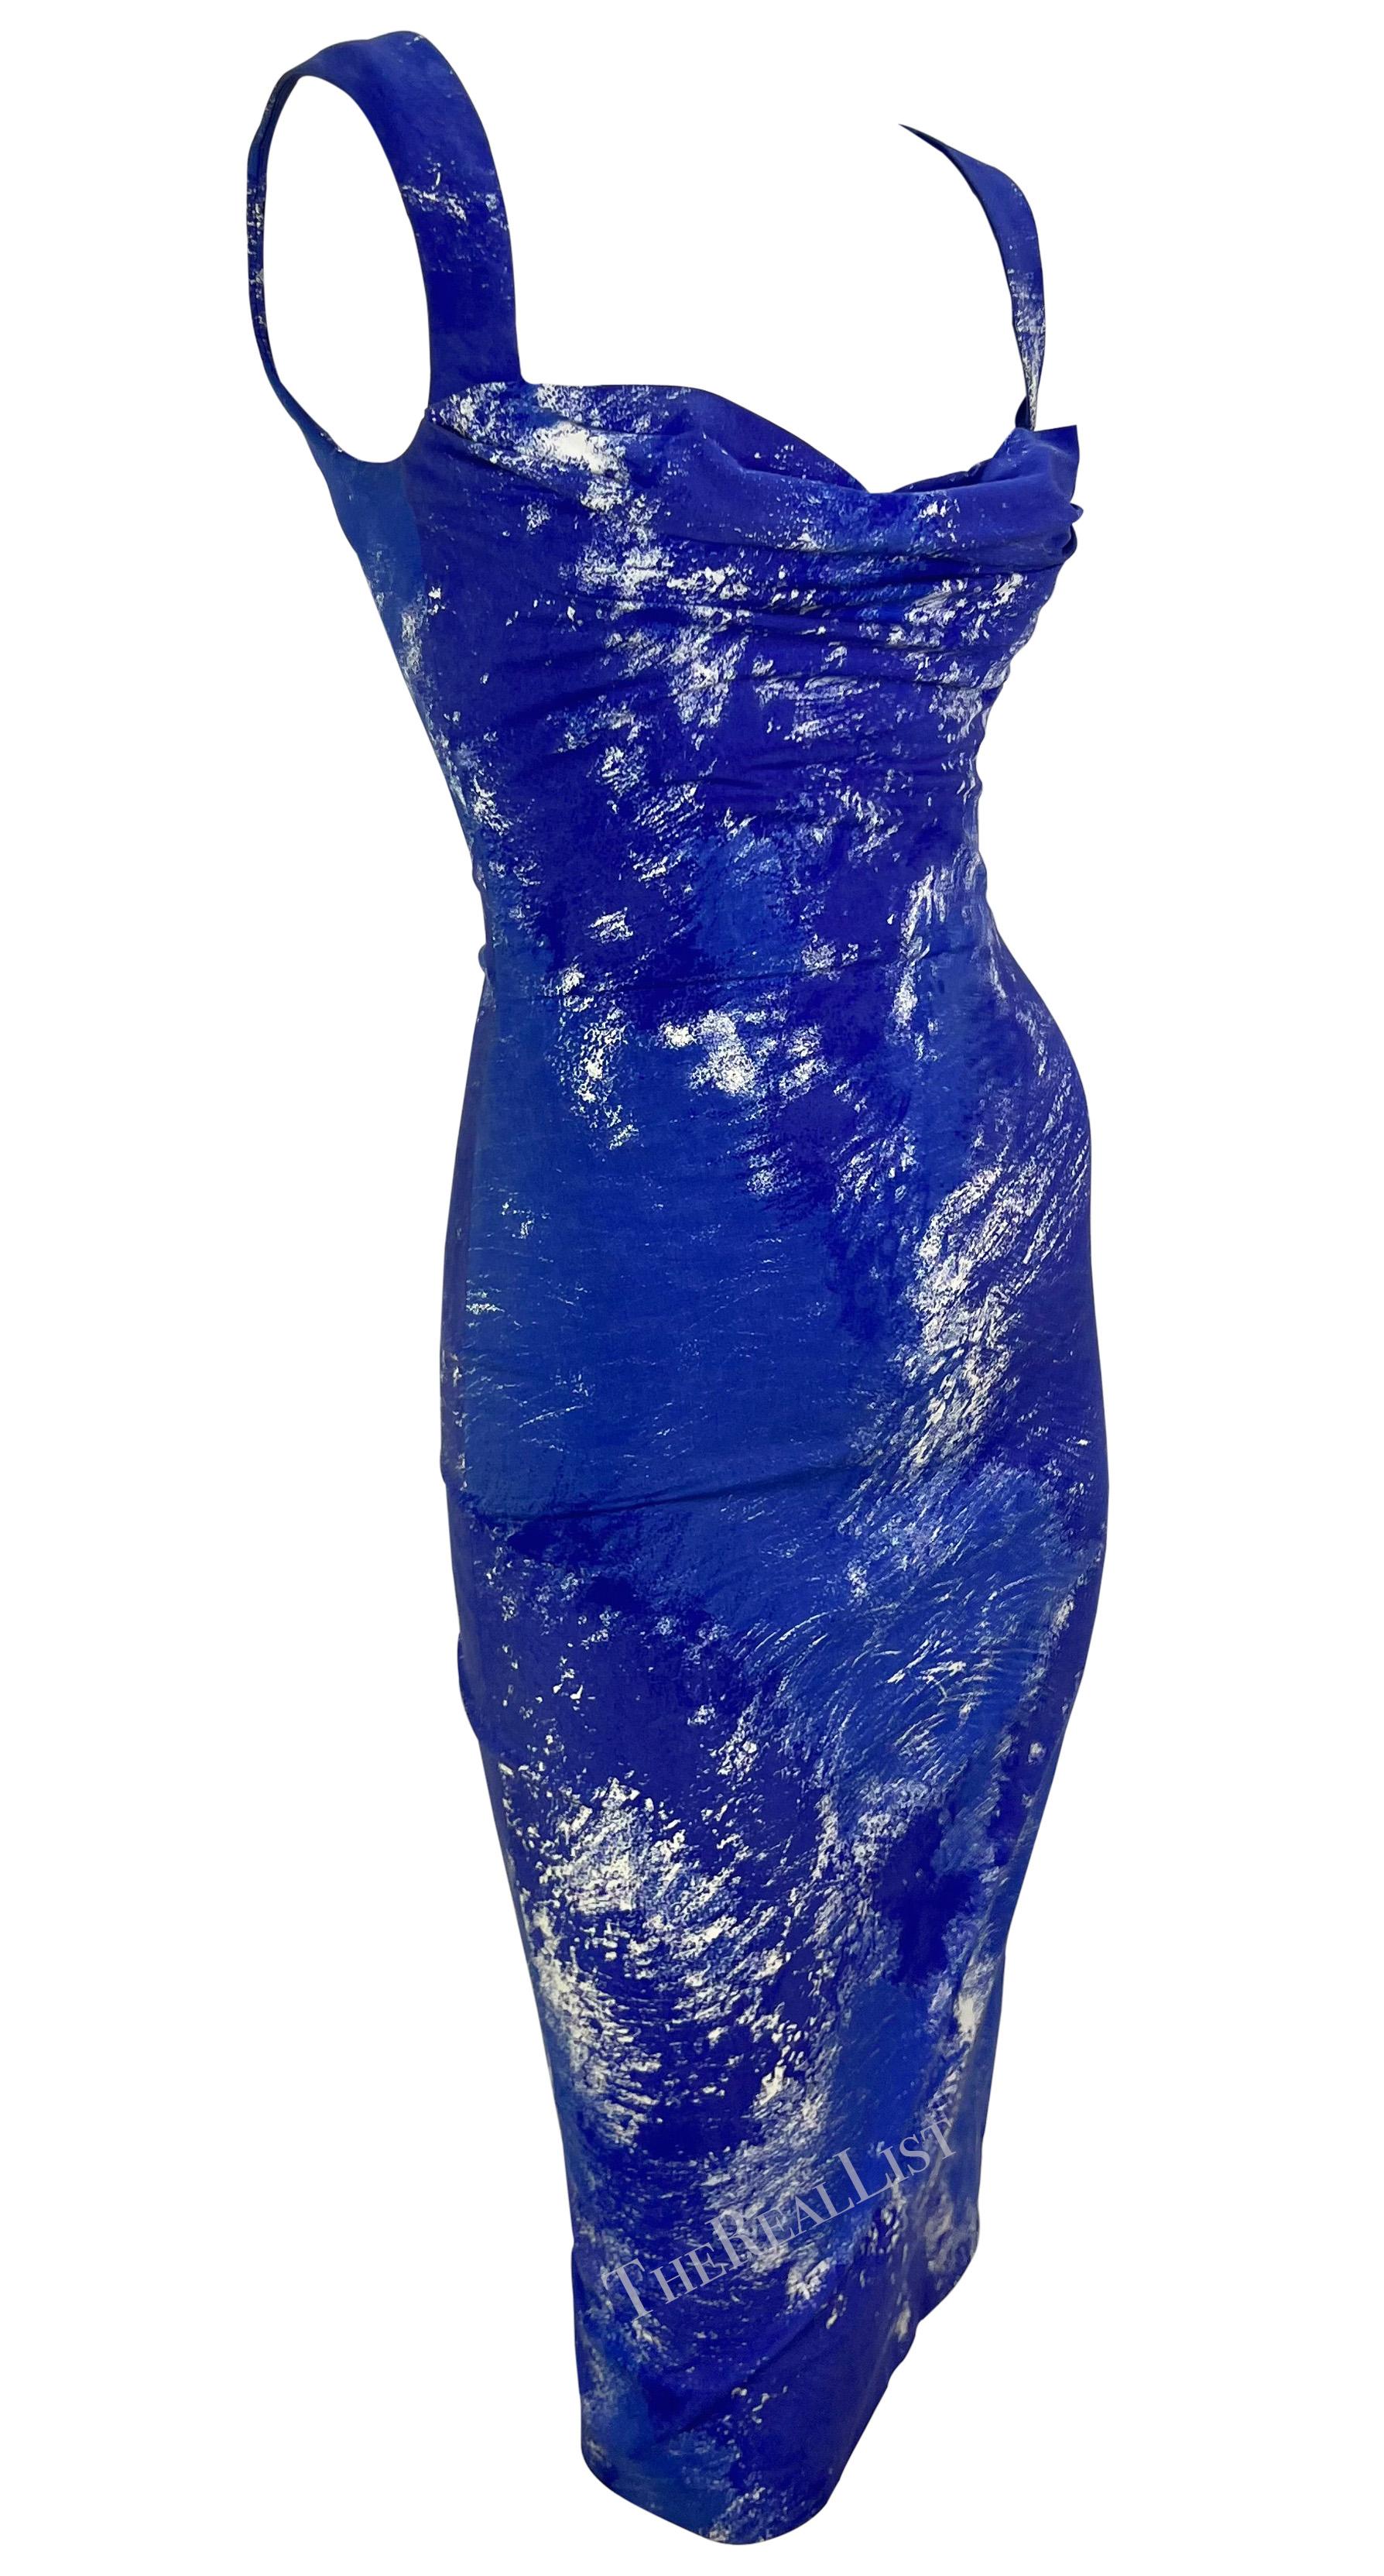 S/S 1999 Vivienne Westwood 'La Belle Hélène' Runway Corseted Blue White Dress For Sale 6